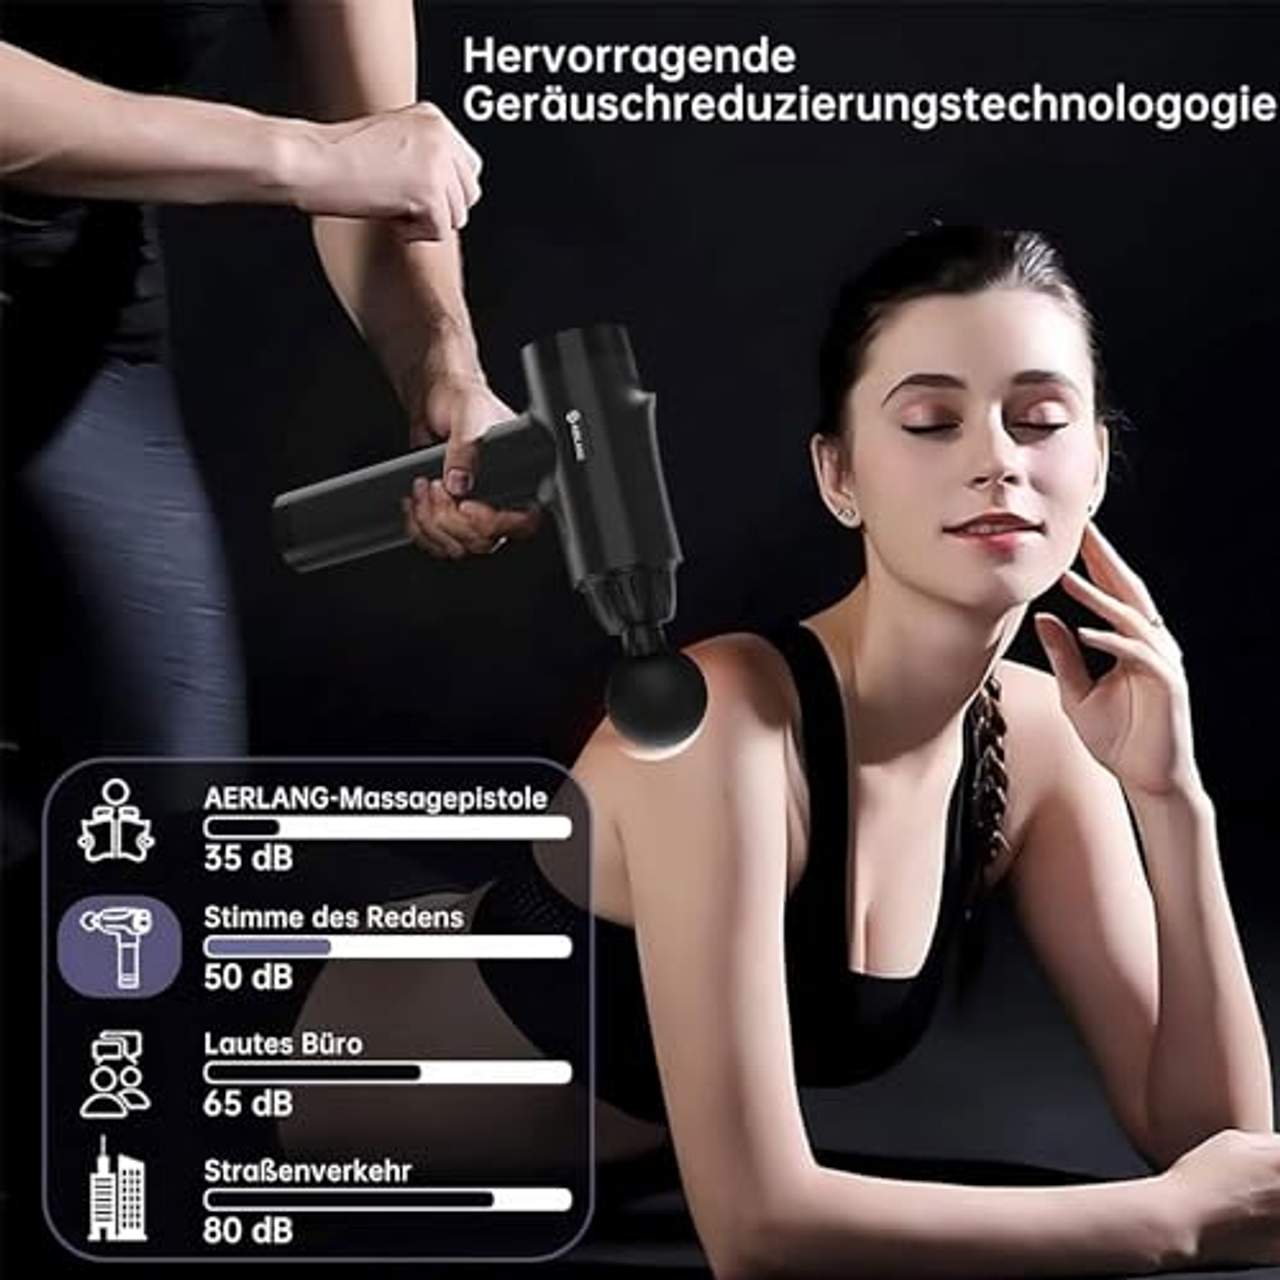 AERLANG Massagepistole Massage gun Tiefengewebe-Massagegerät